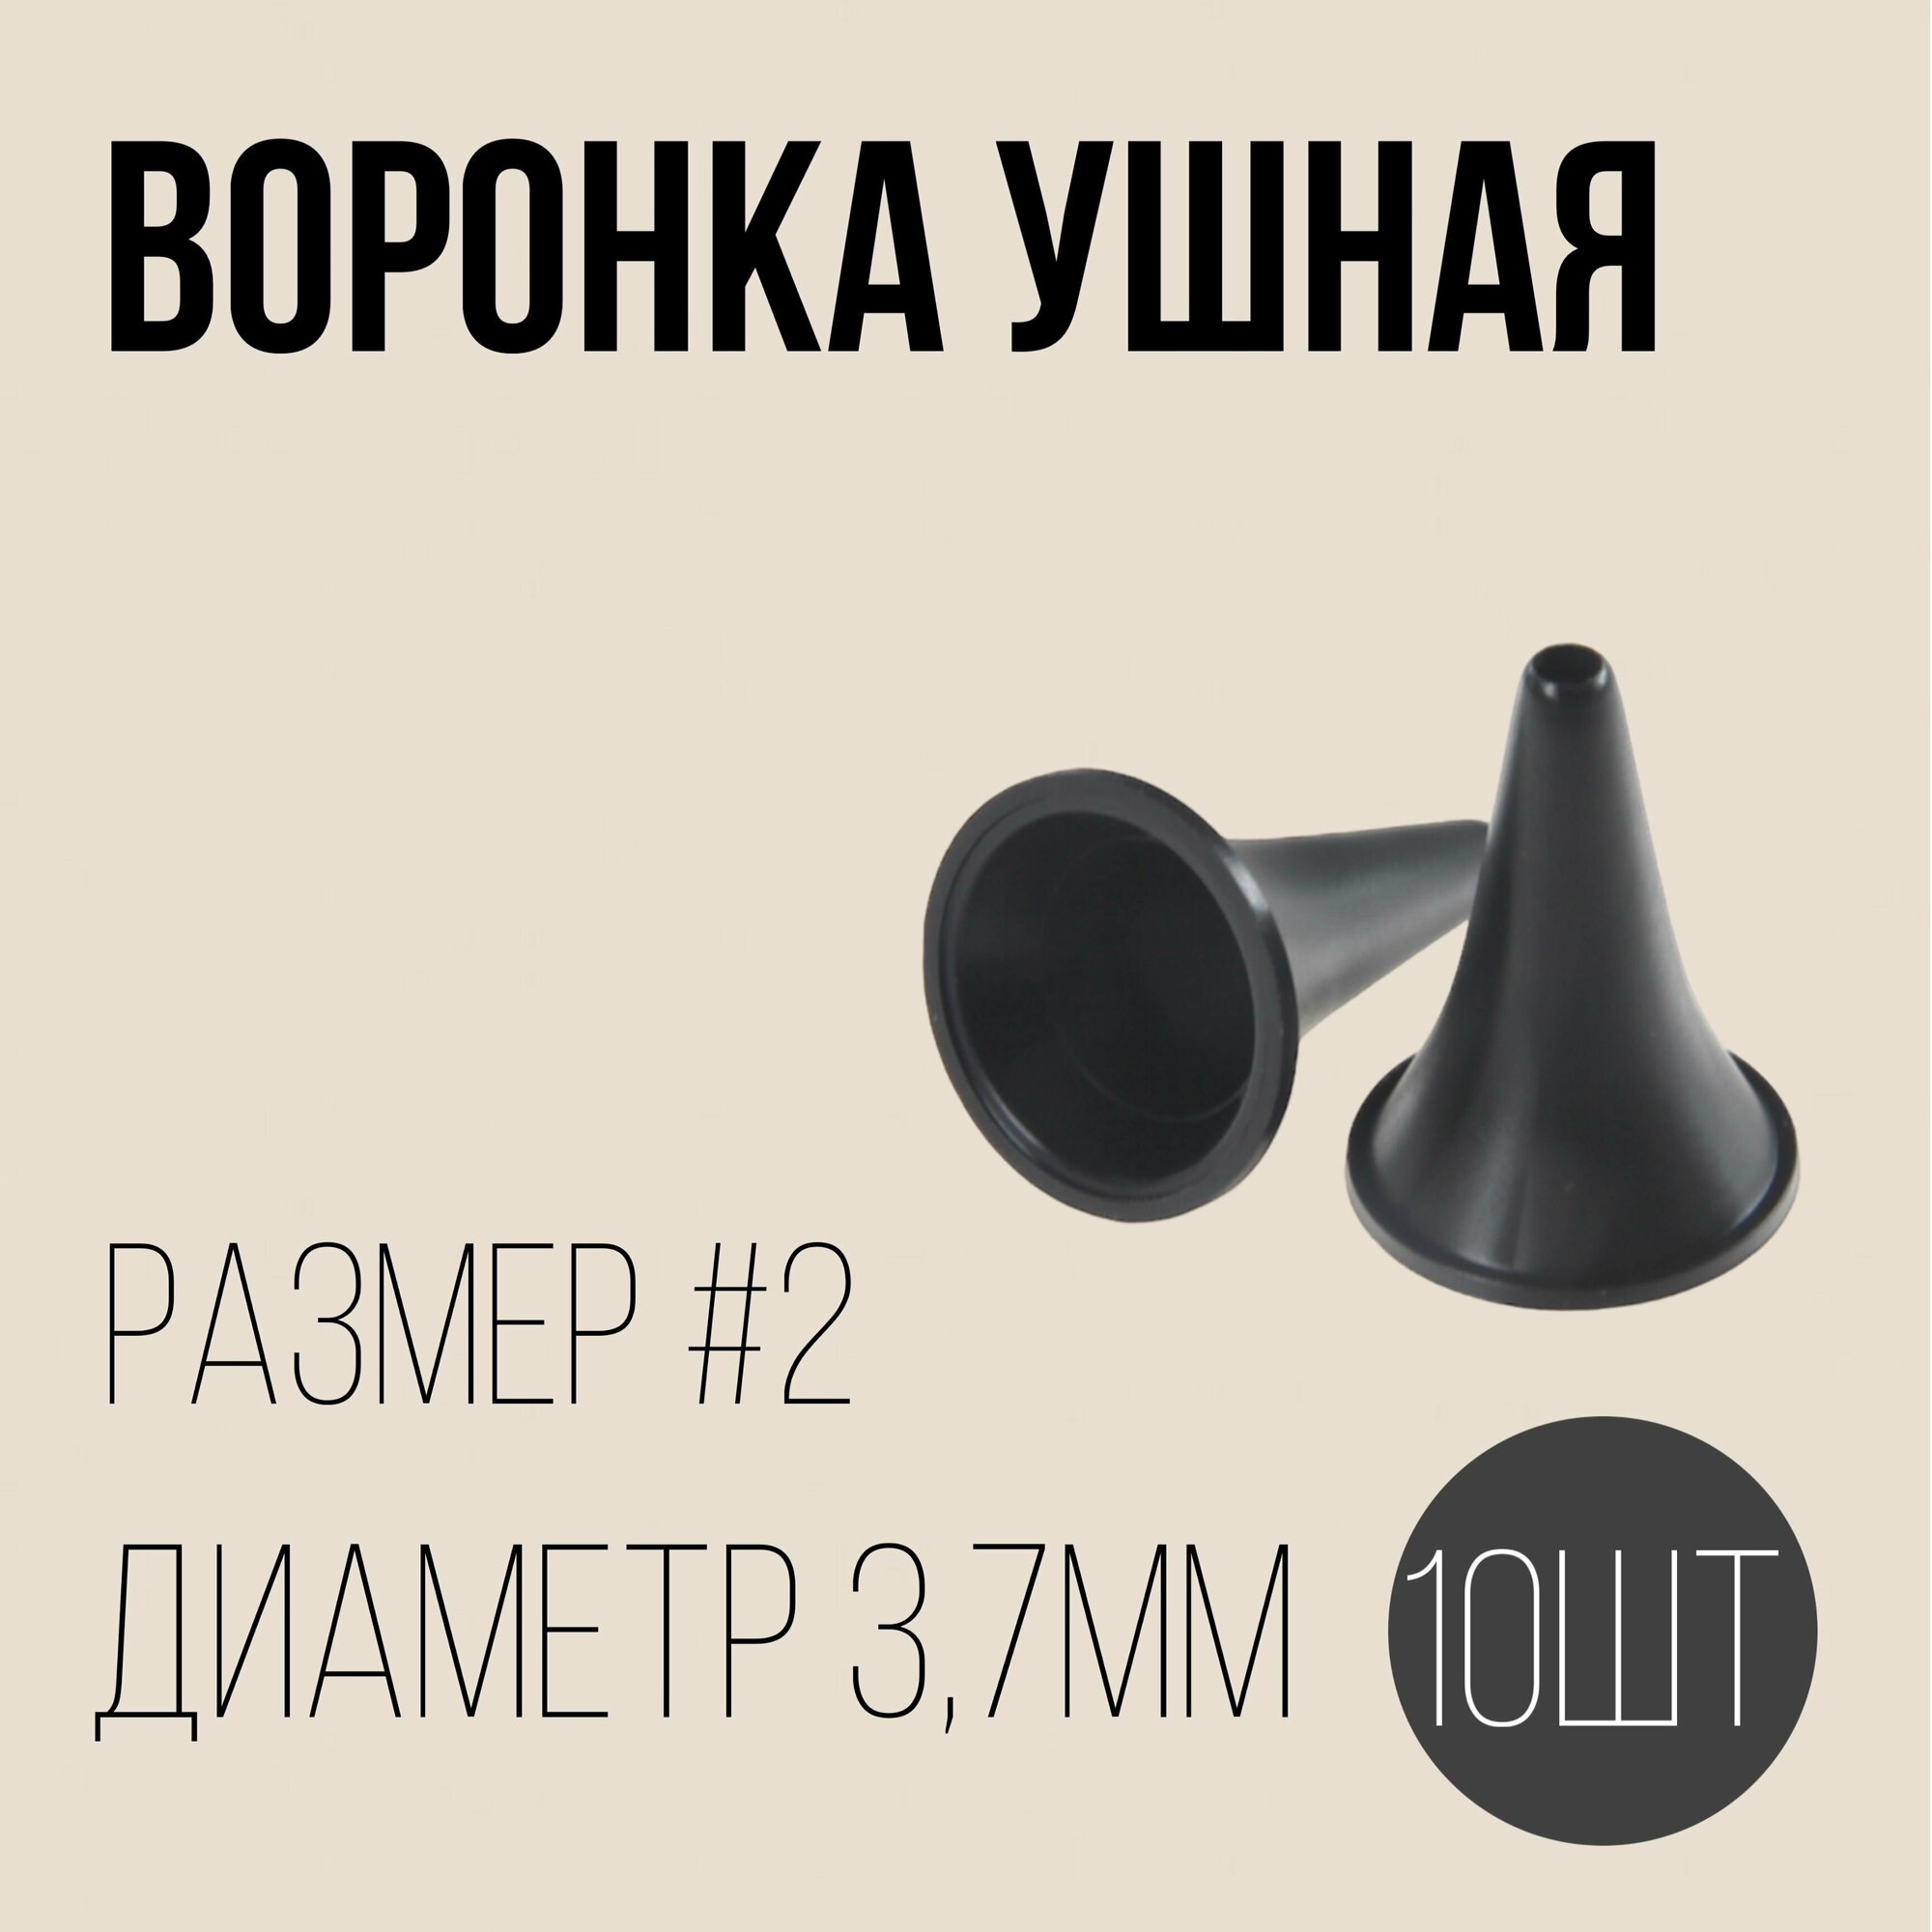 Воронка ушная №2 комплект - 10шт полимерные изделия